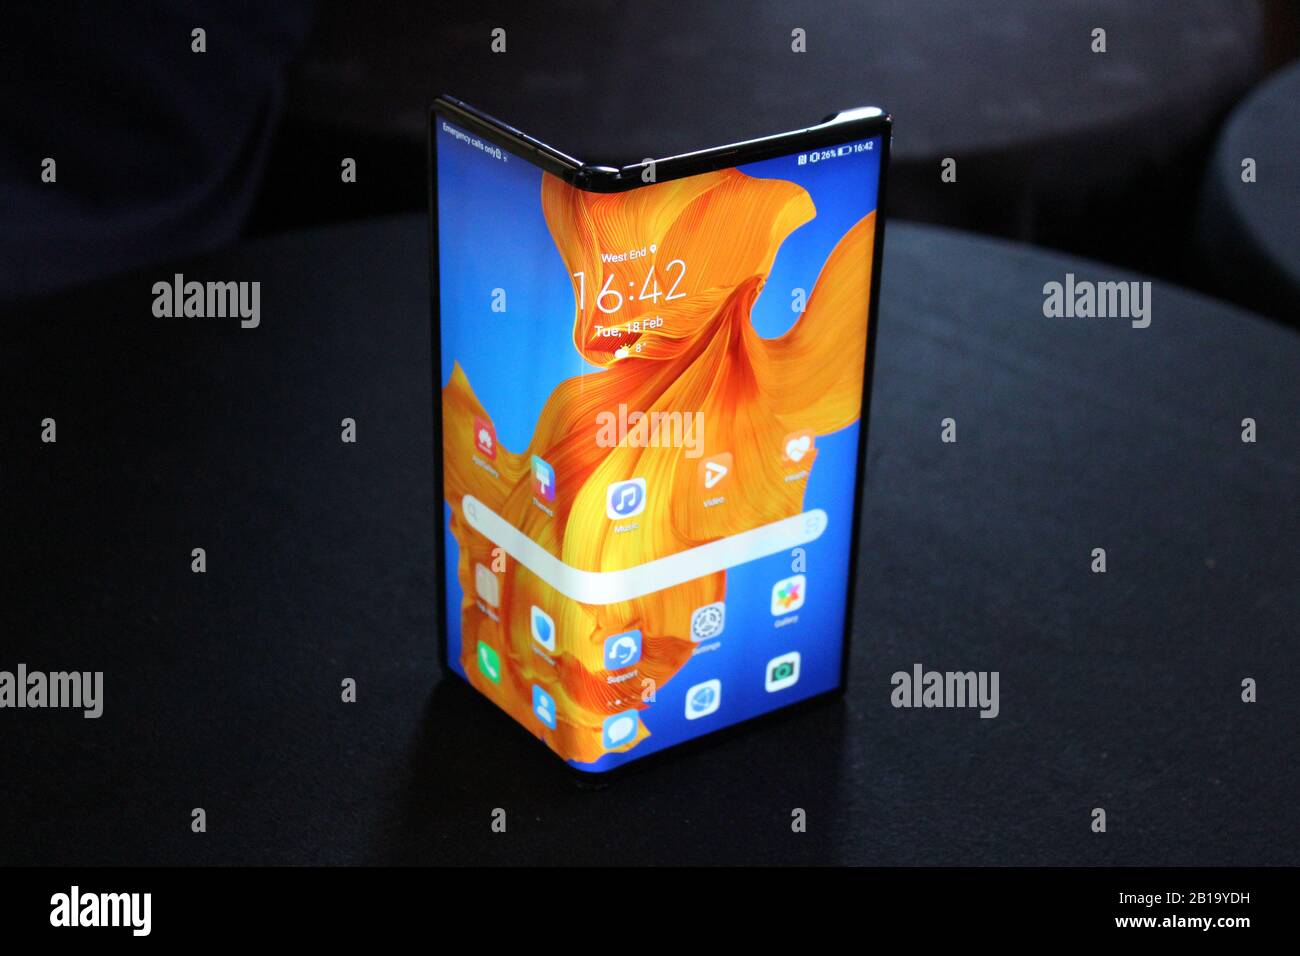 Le nouveau smartphone pliable Huawei Mate X, qui a été dévoilé lundi. Banque D'Images